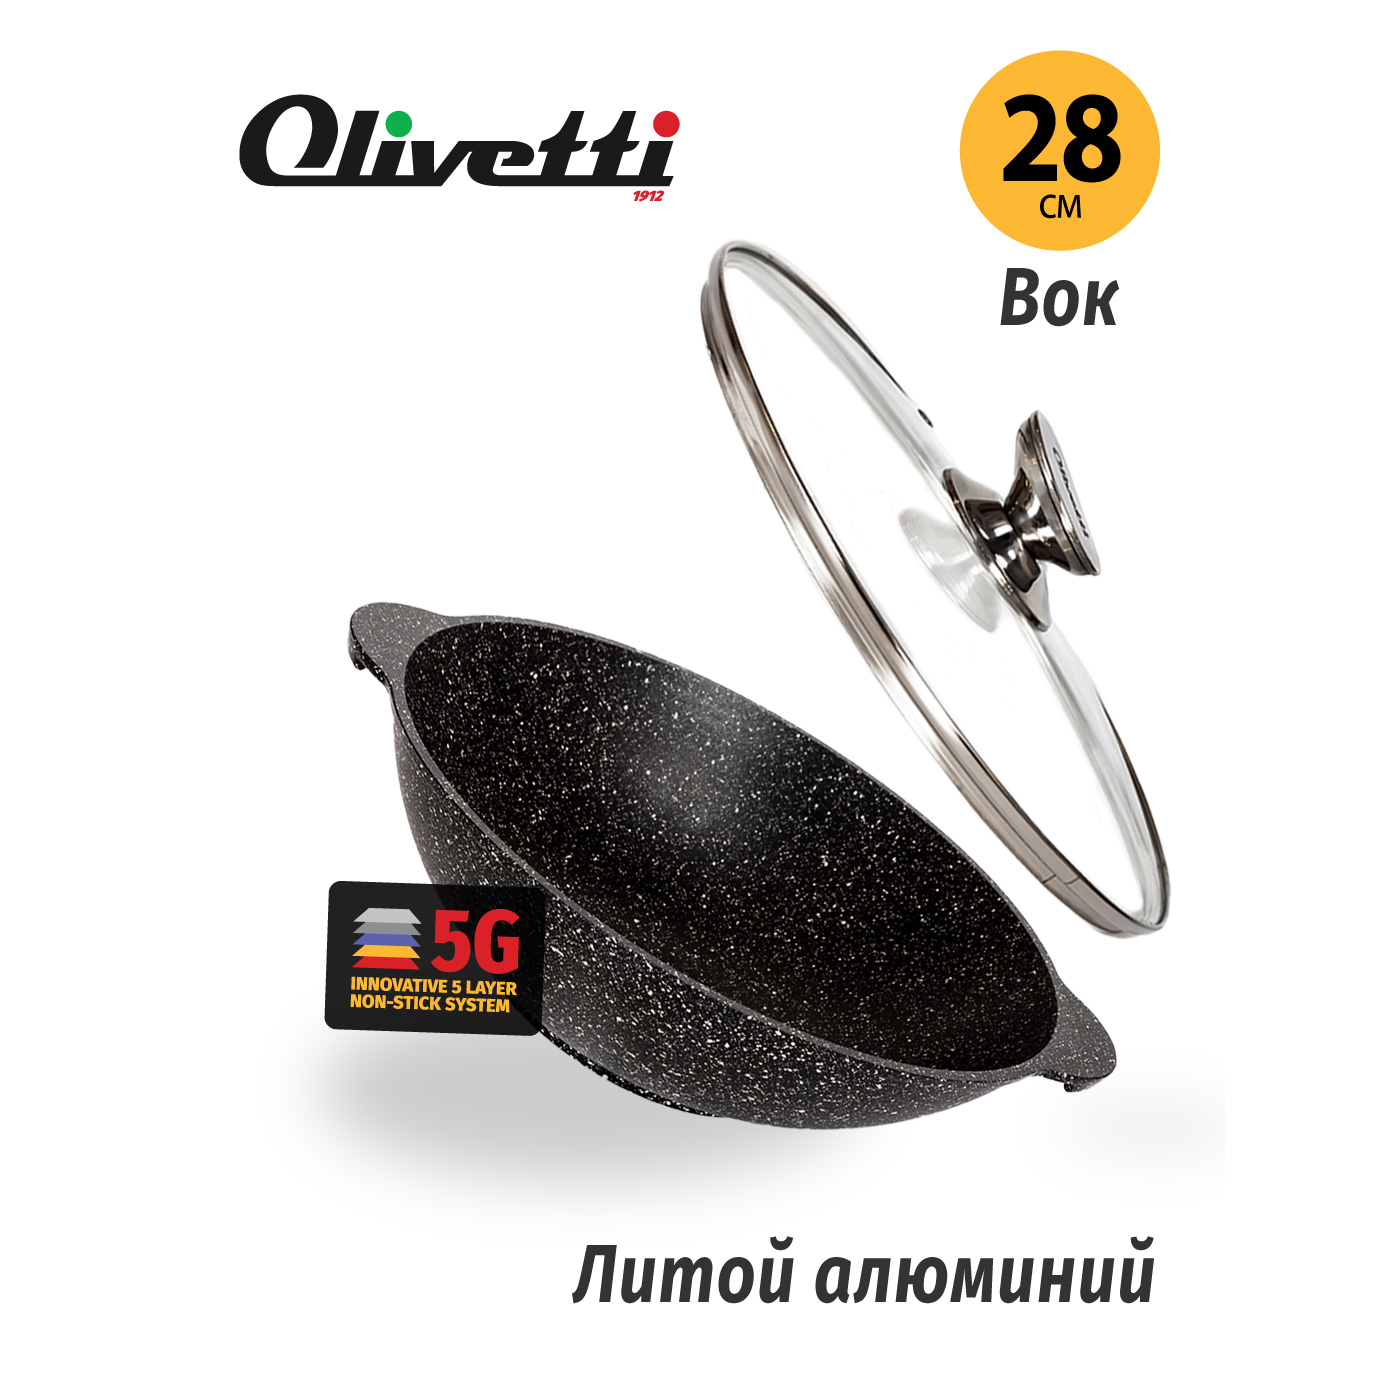 Картинка Алюминиевый вок Olivetti WP728L 28 см по разумной цене купить в интернет магазине mall.su